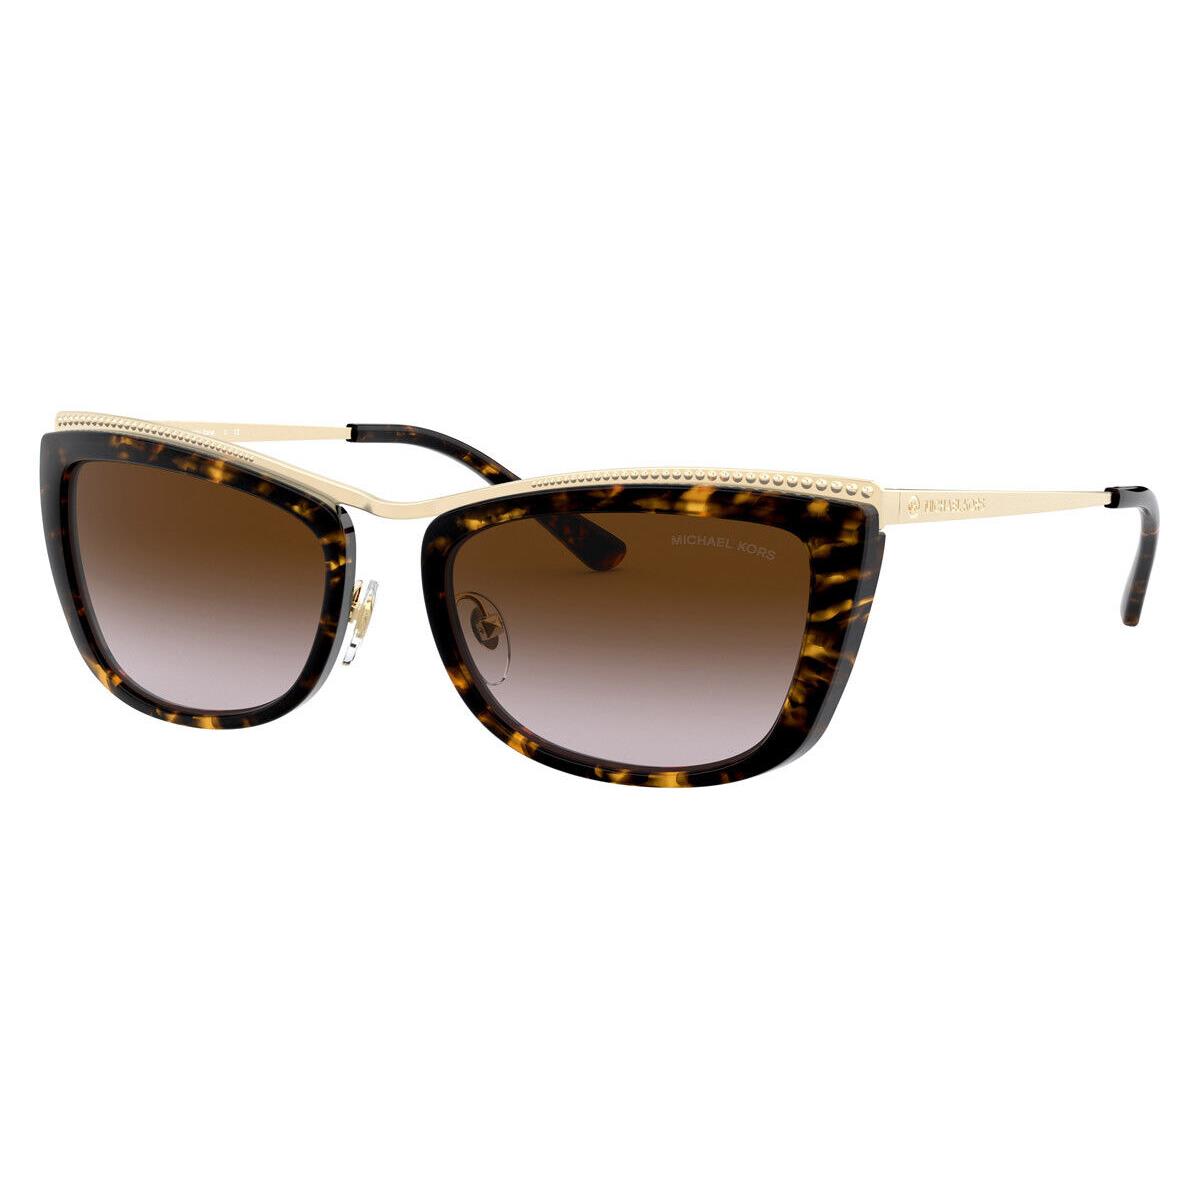 Michael Kors Women`s 56mm Gold Tortoise Sunglasses MK1064-101413-56